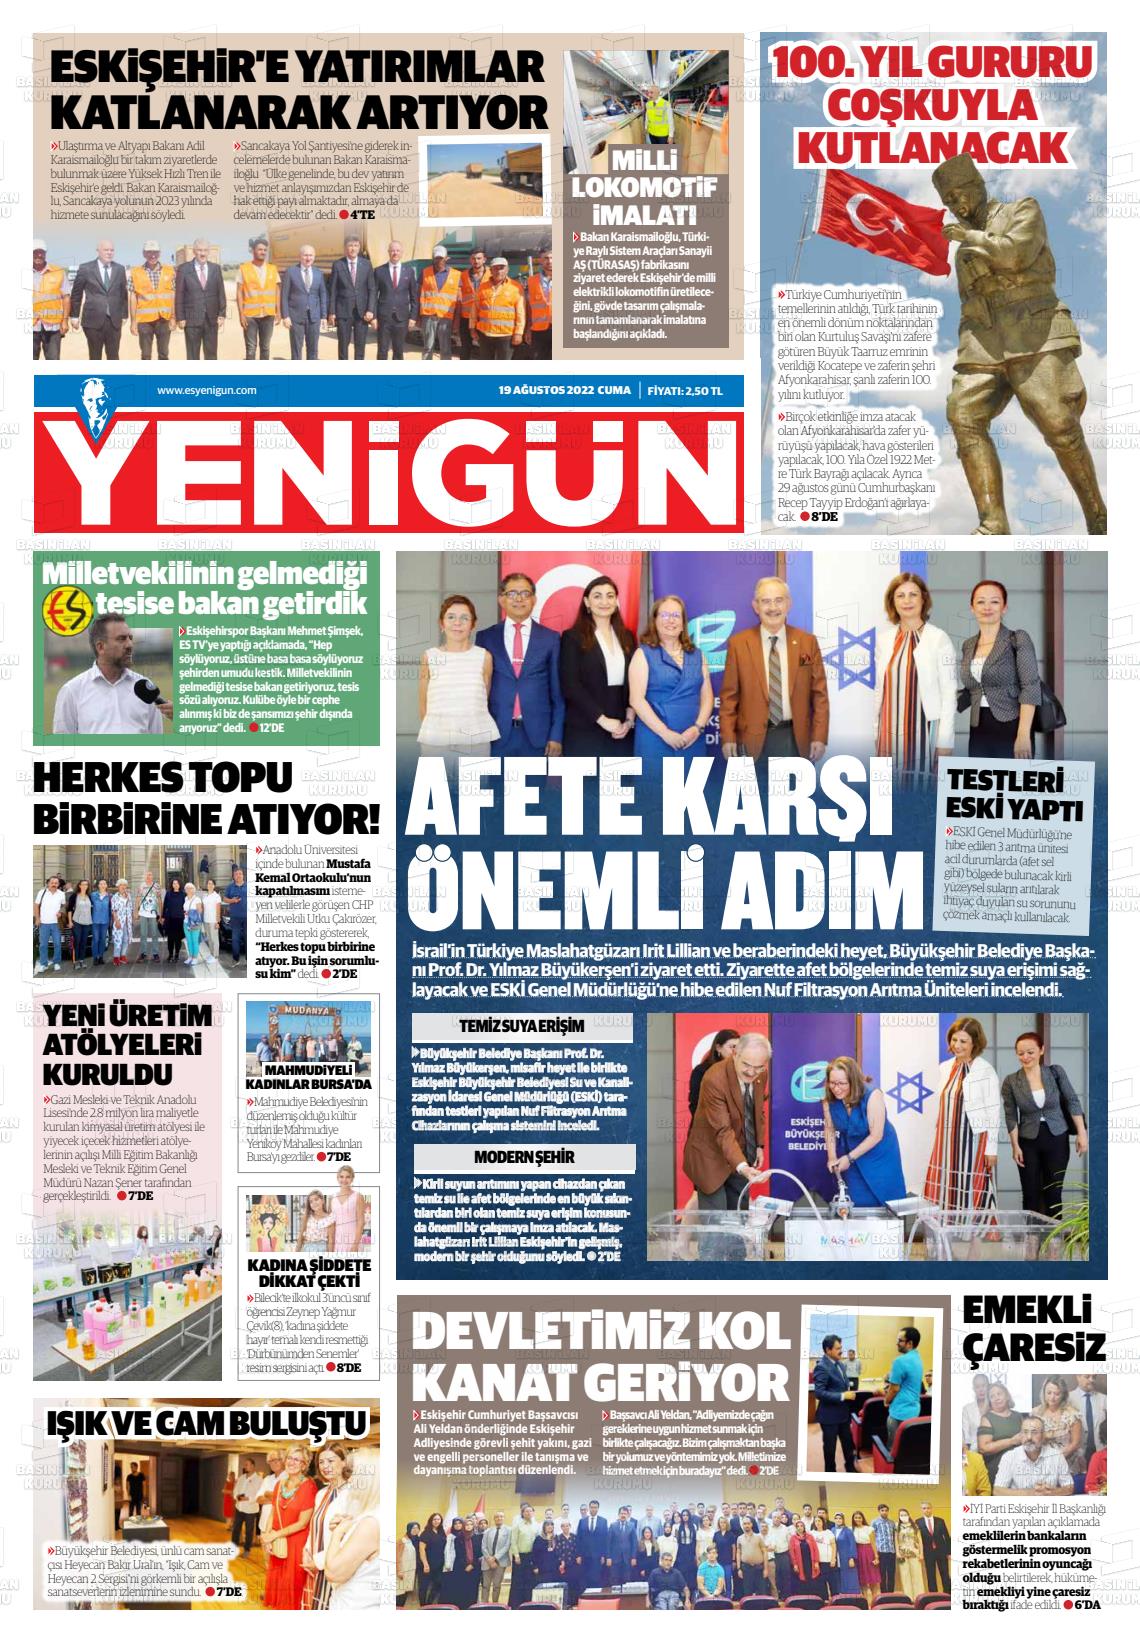 19 Ağustos 2022 Eskişehir Yeni Gün Gazete Manşeti